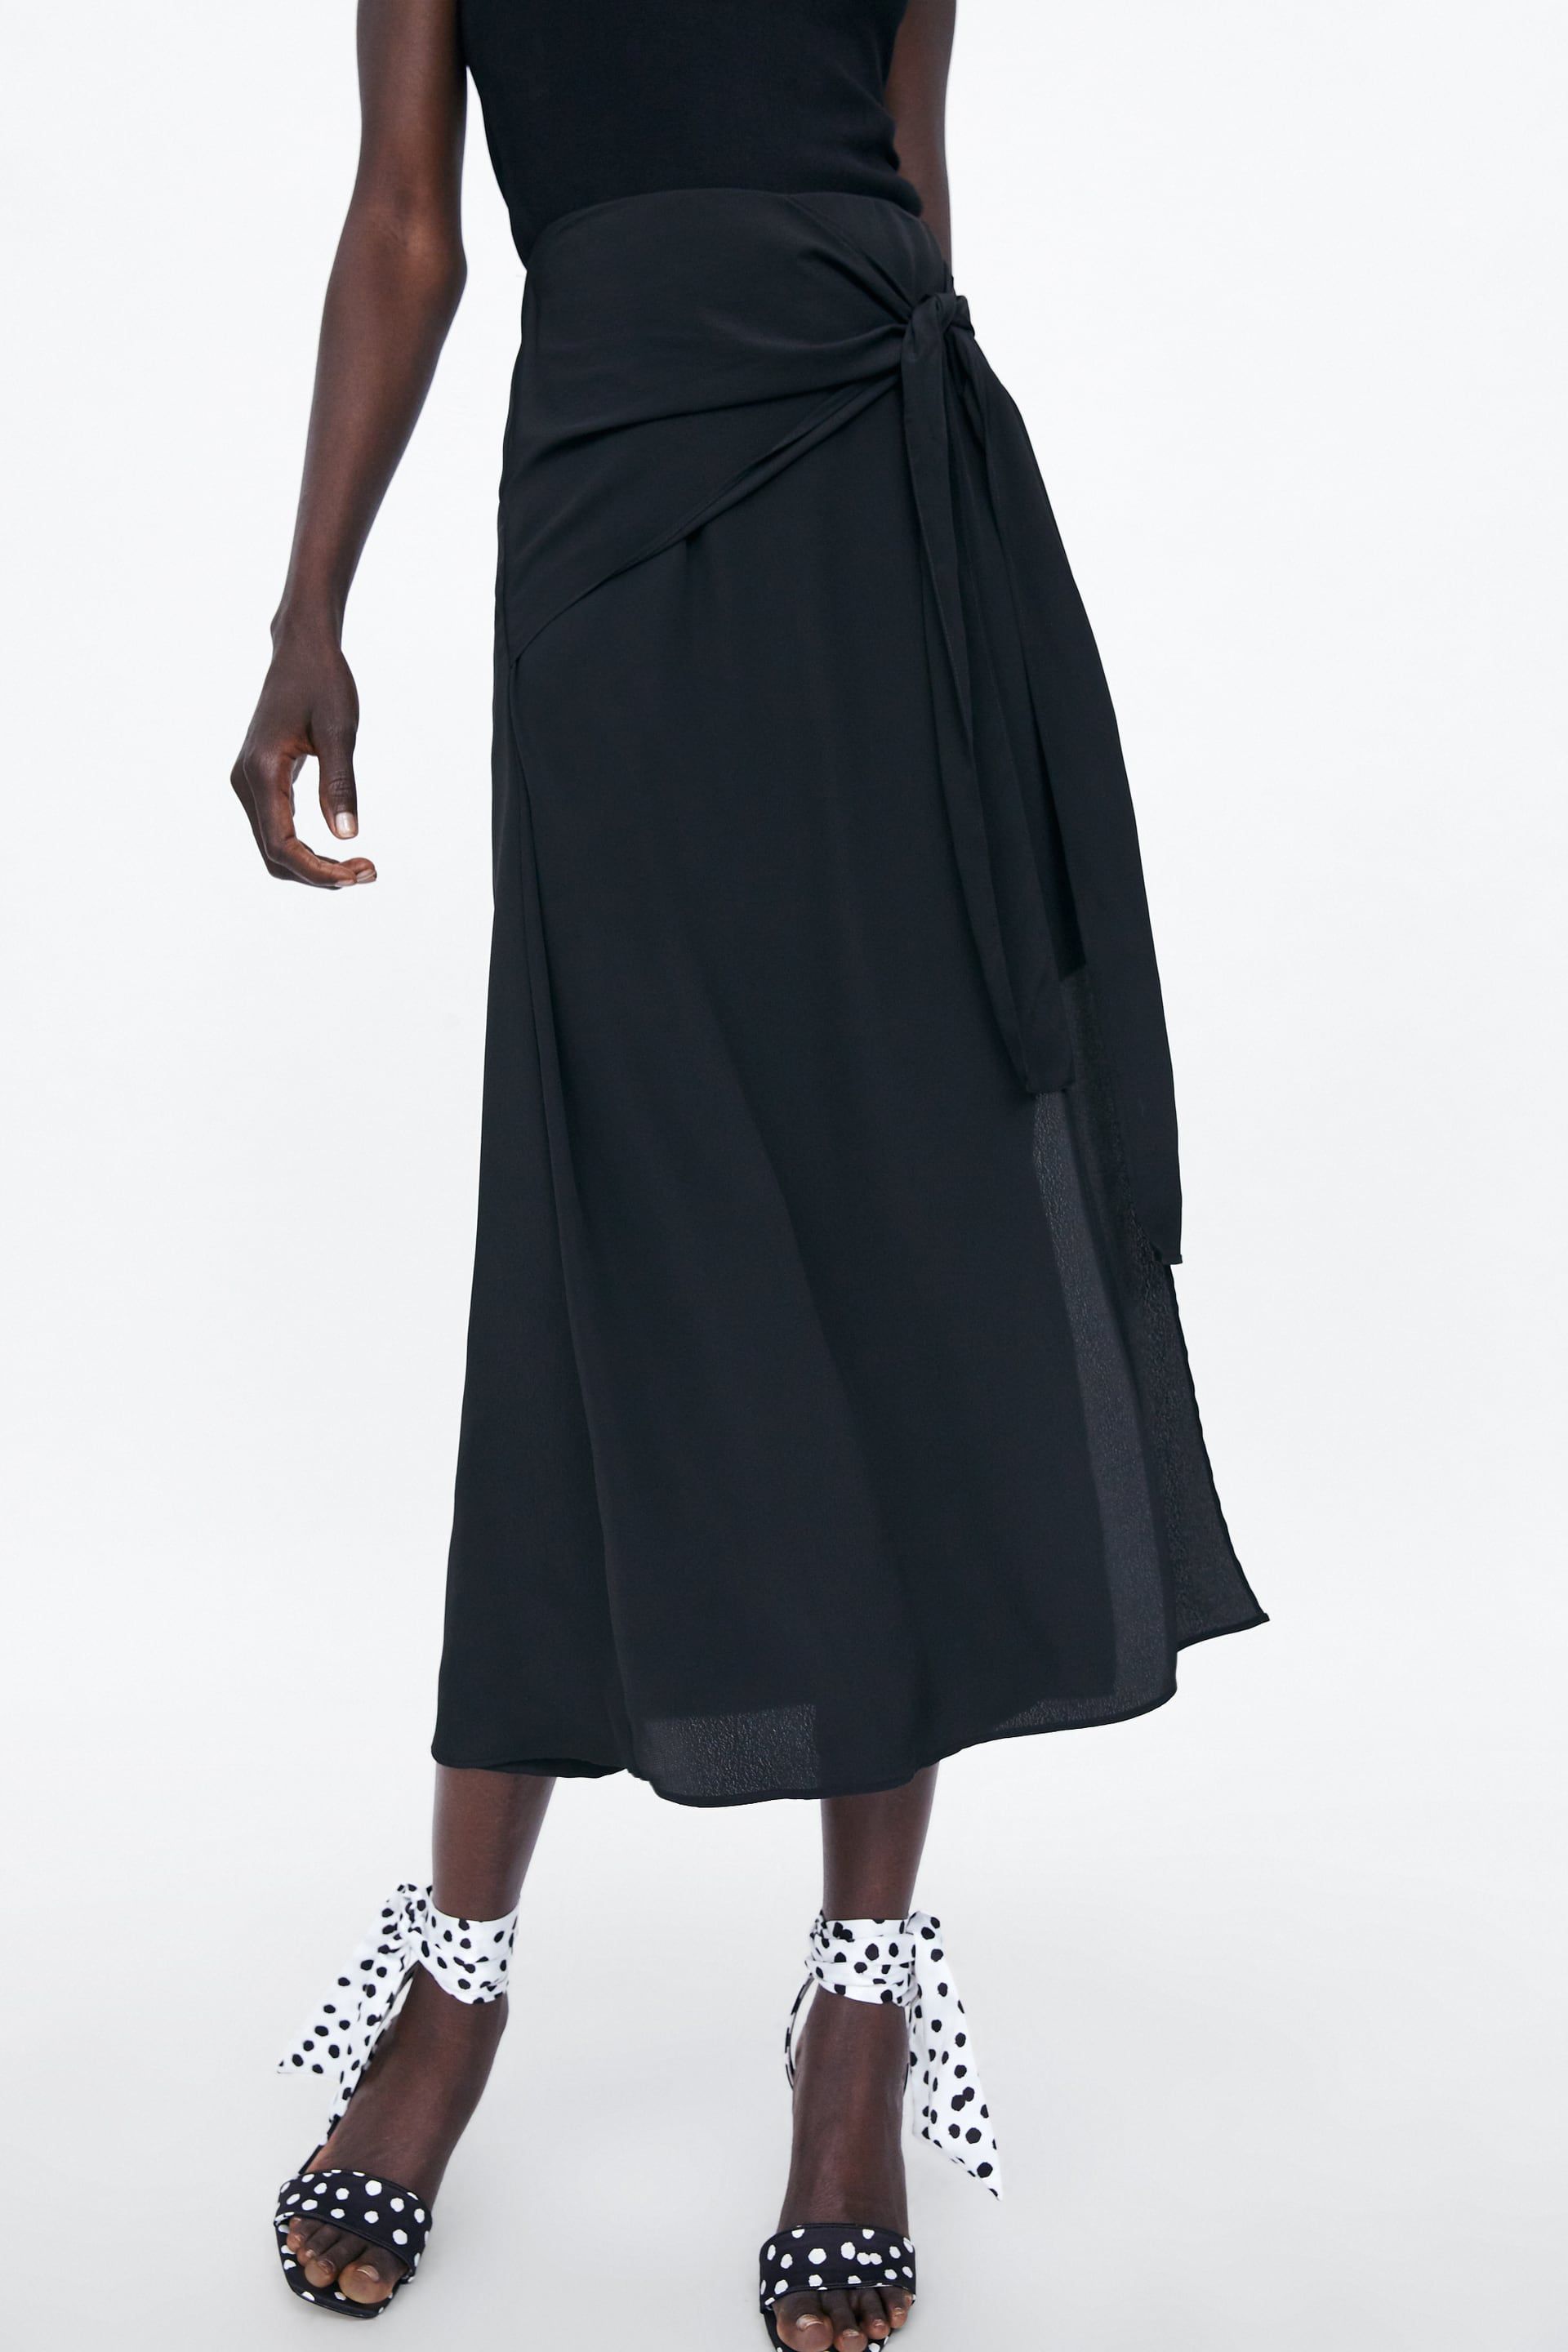 falda larga pantalón de Zara que está arrasando en ventas en su tienda